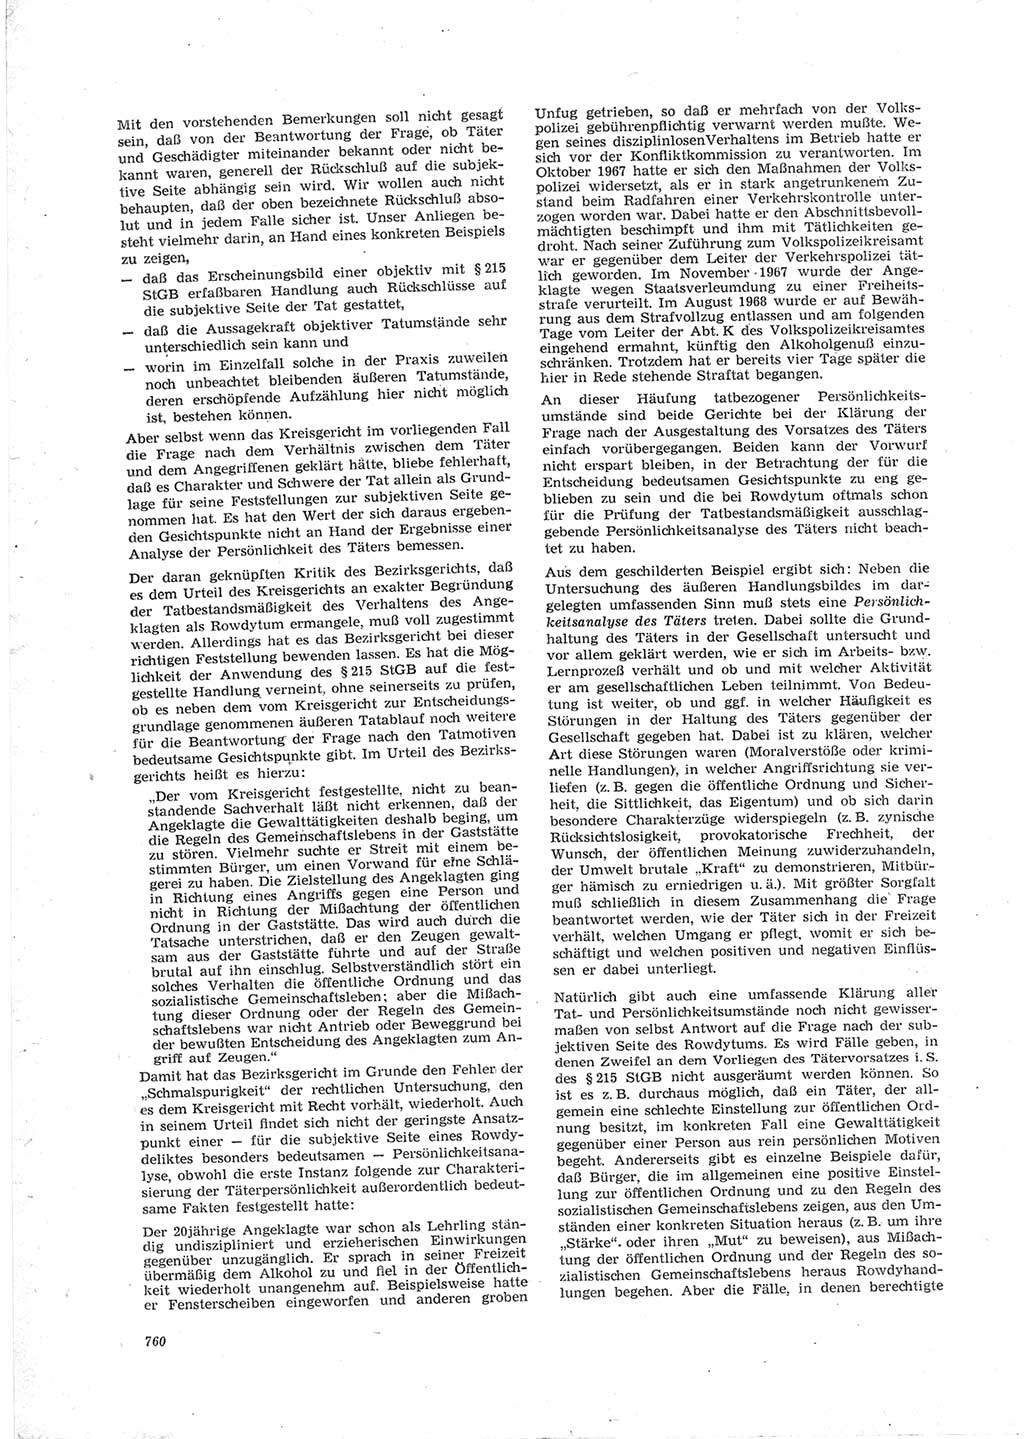 Neue Justiz (NJ), Zeitschrift für Recht und Rechtswissenschaft [Deutsche Demokratische Republik (DDR)], 23. Jahrgang 1969, Seite 760 (NJ DDR 1969, S. 760)